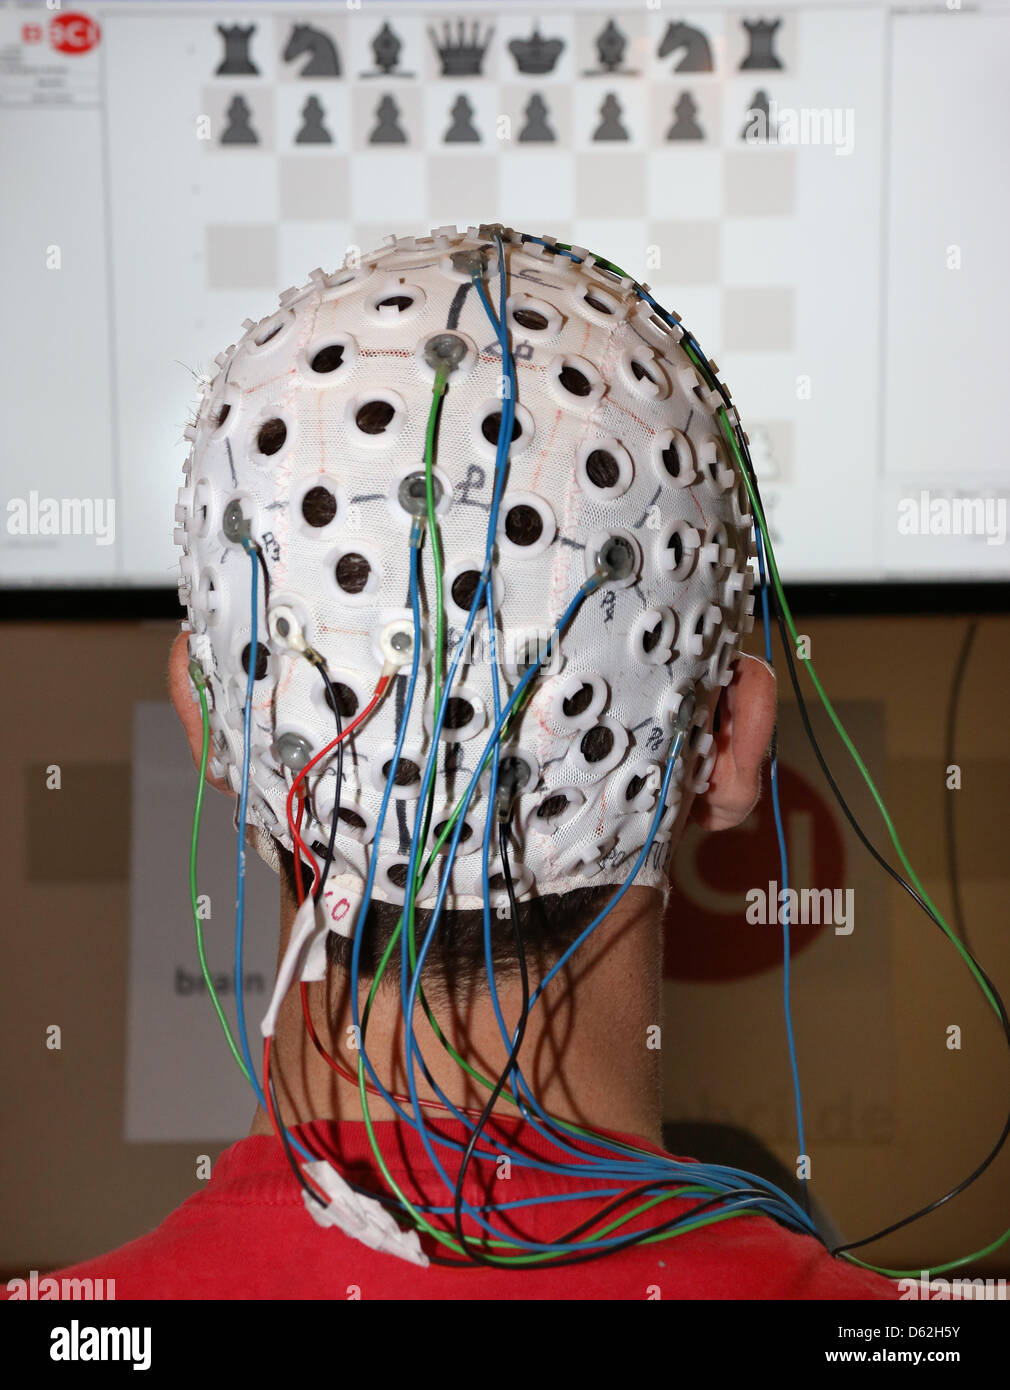 Sven Daehne spielt Schach mit einem EEG (Elektroenzephalogramm) an der technischen Universität in Berlin, Deutschland, 22. Mai 2012. Die EEG-Kappe misst Gehirnwellen, die von einem Computer entschlüsselt werden. Die Demonstration fand für die kommenden langen Nacht der Wissenschaften. Foto: STEPHANIE PILICK Stockfoto